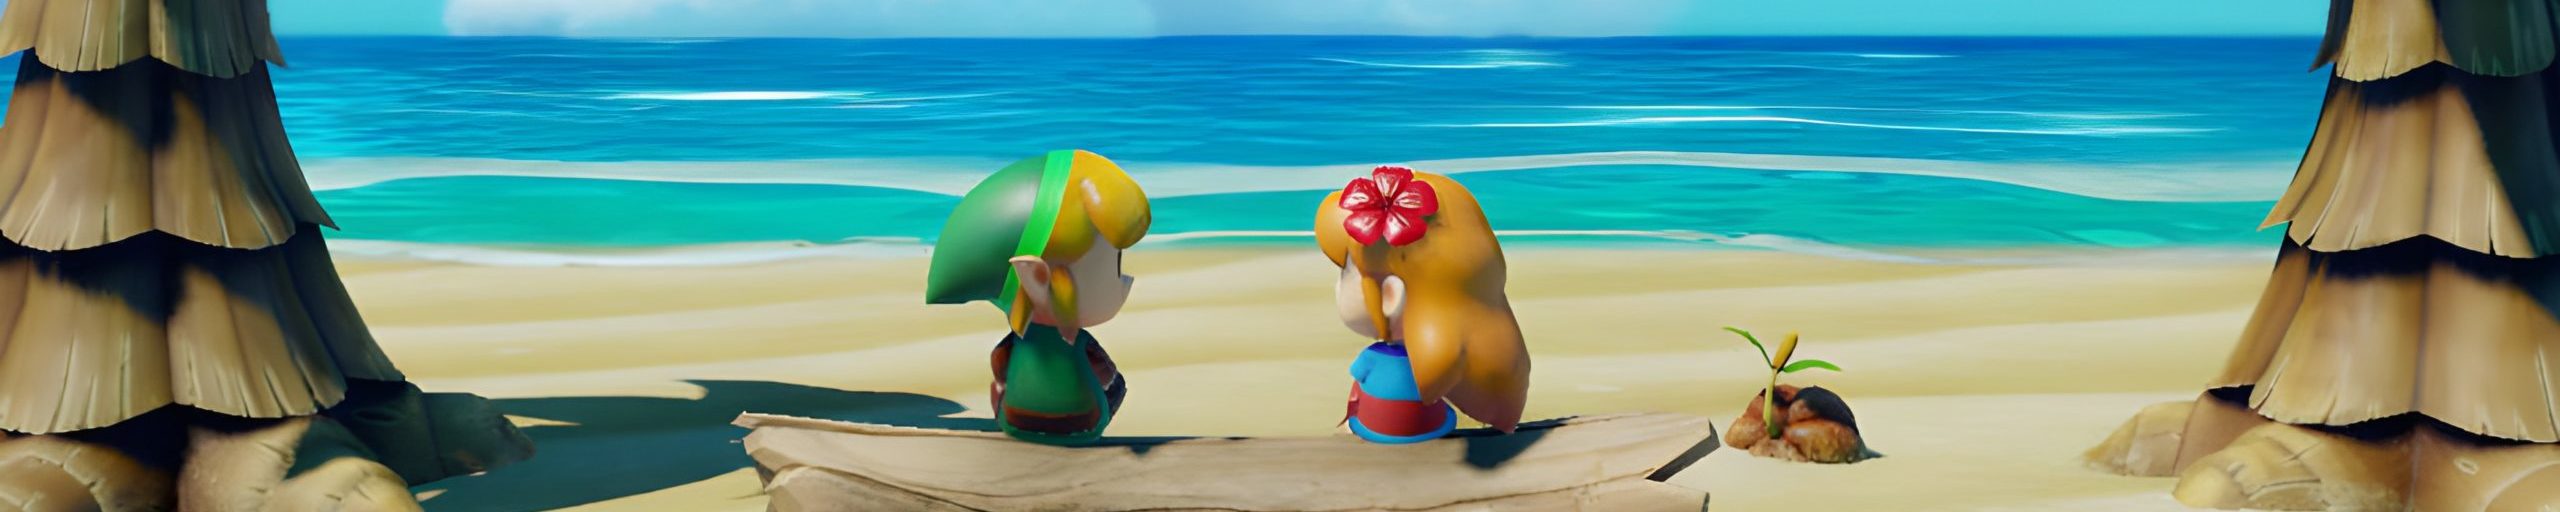 The Legend Of Zelda Link's Awakening-Parallax